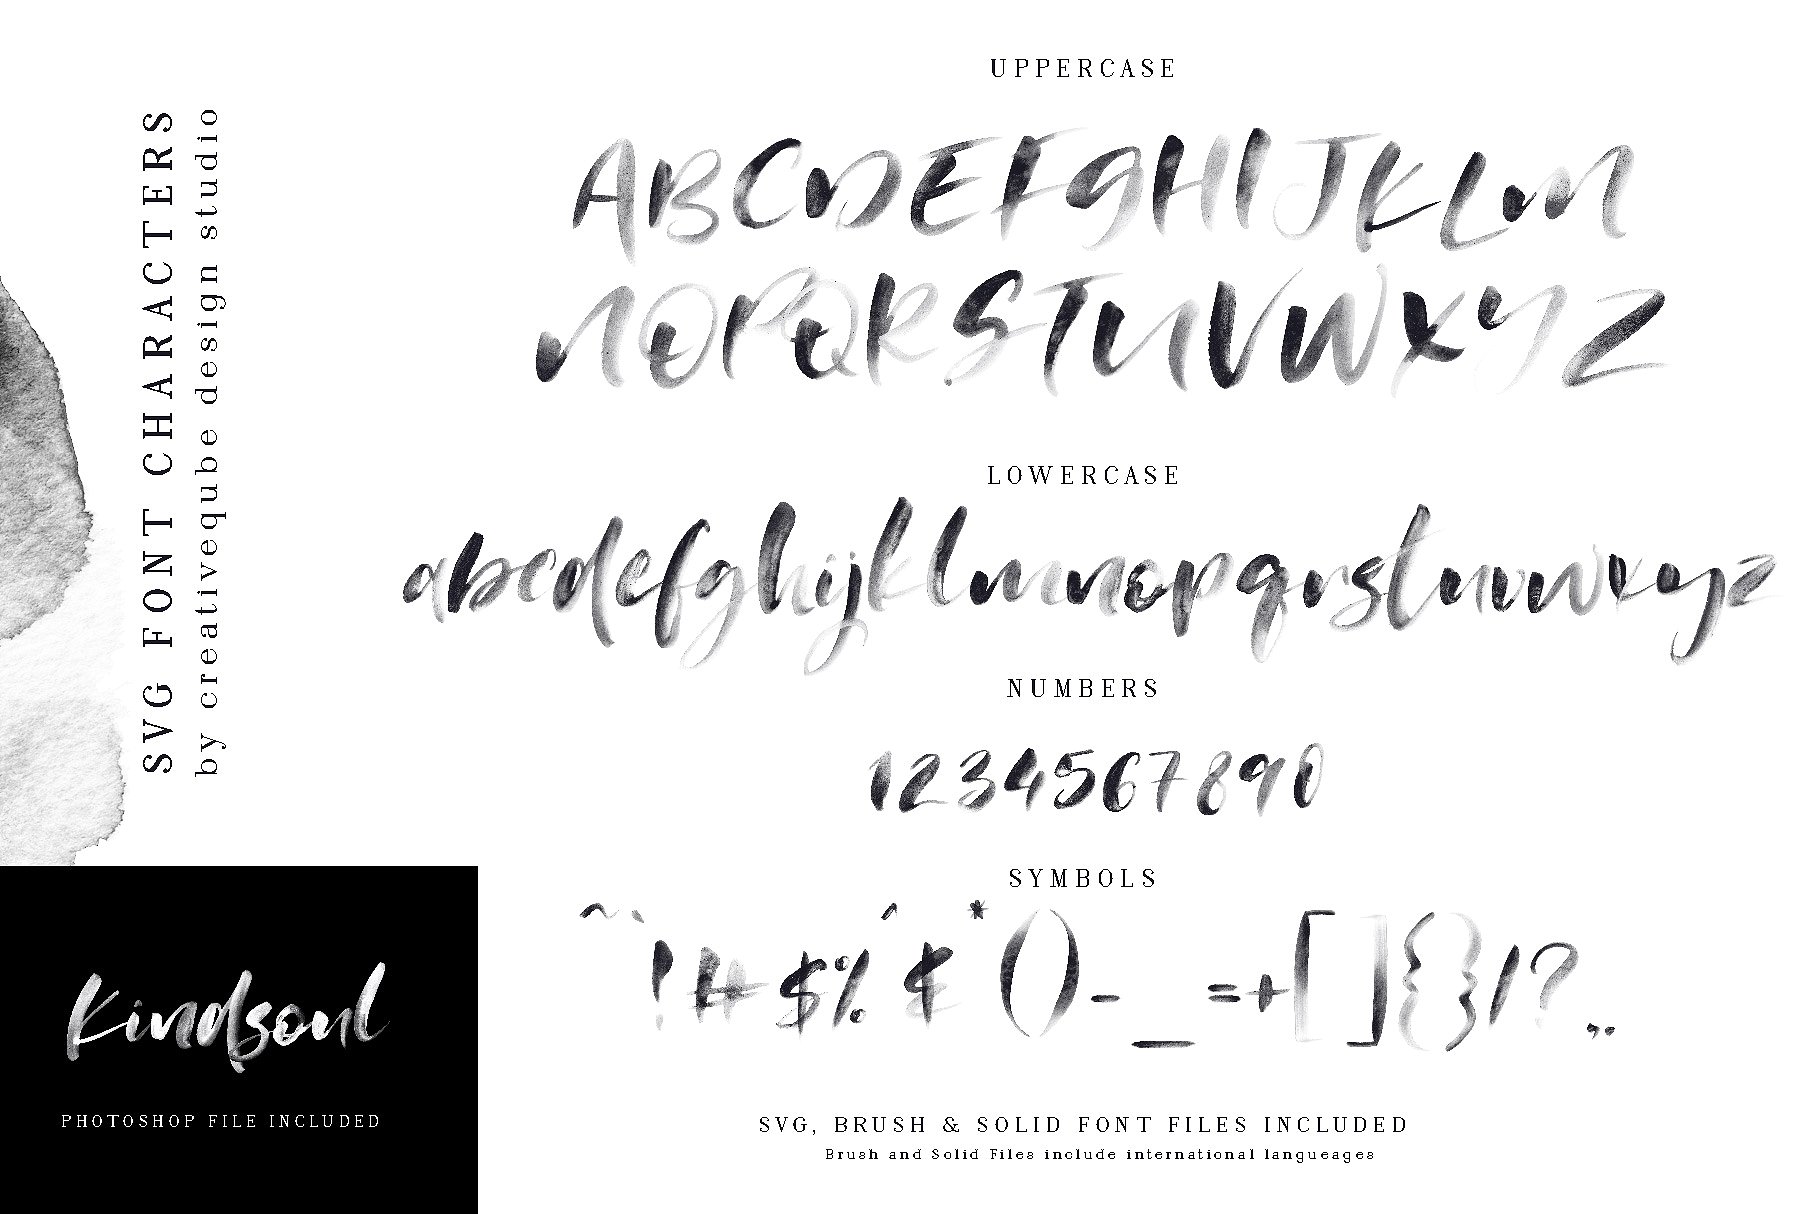 手绘水彩SVG字体&平滑衬线英文字体 KindSoul SVG Script & Serif Font Duo插图(9)